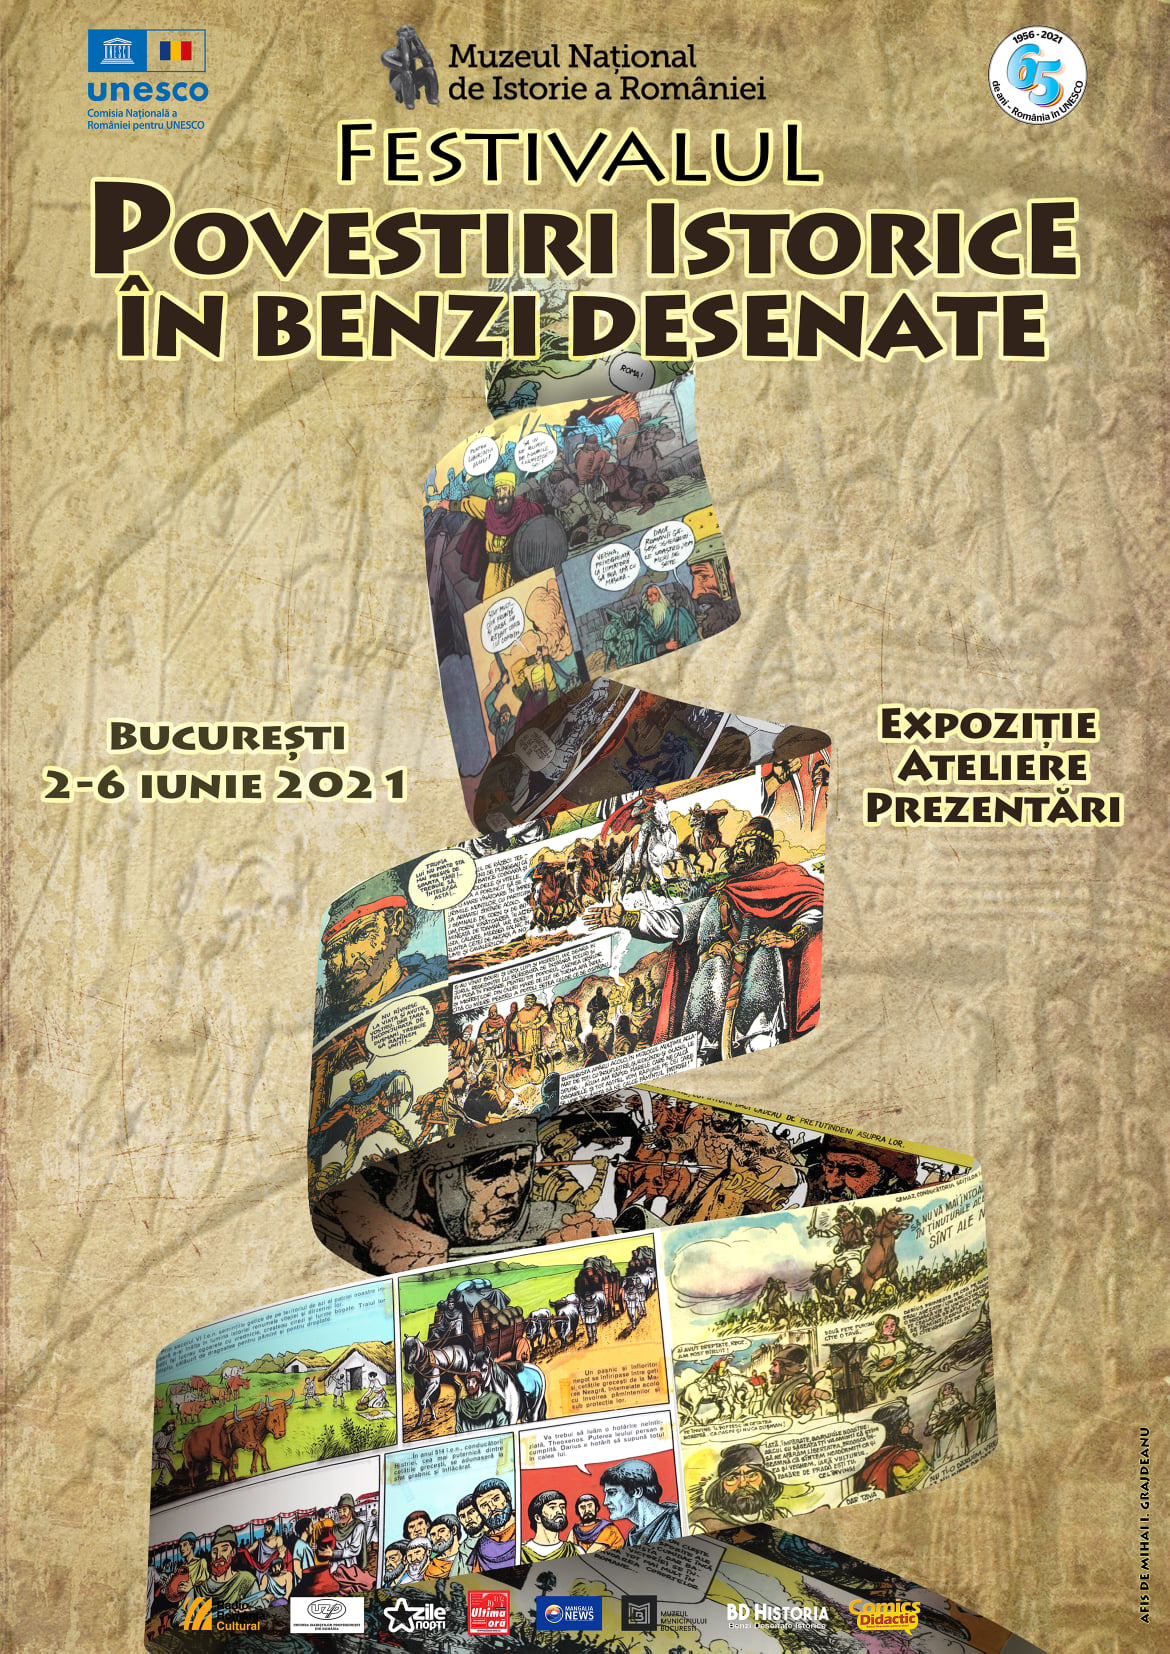 Festivalul ”Povestiri istorice în Benzi Desenate” - un regal al benzilor desenate românești cu subiect istoric – la MNIR